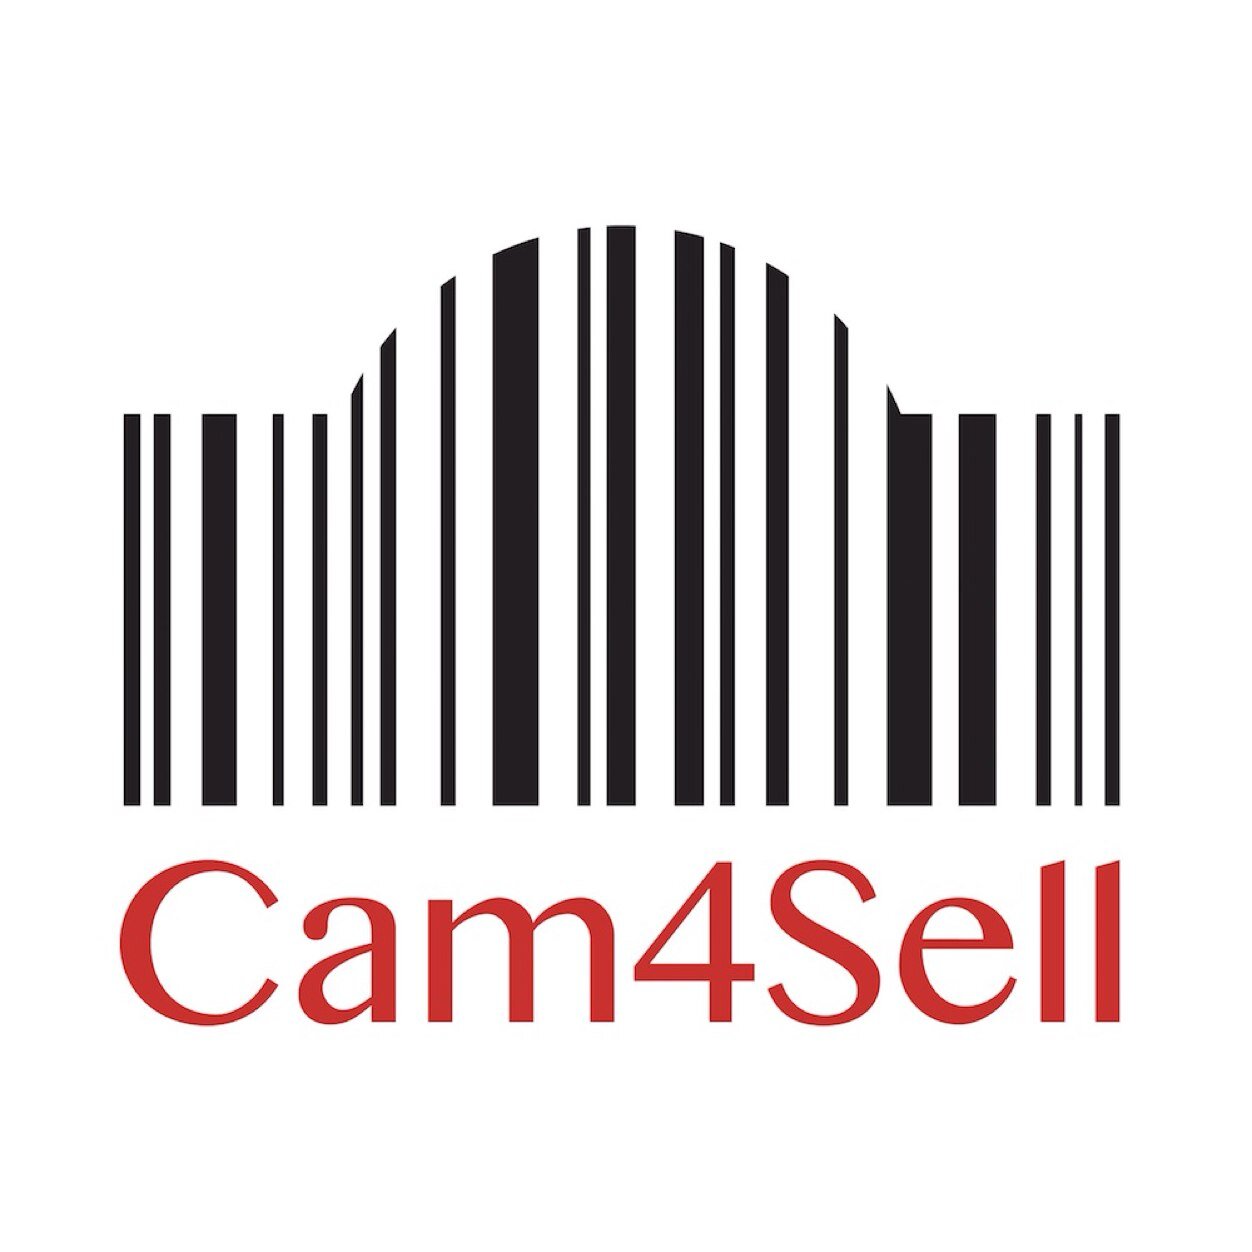 الحساب الرسمي ل cam4sell المتجر المتخصص في ادوات التصوير الفوتوغرافي بأفضل الأسعار. لاي استفسارات contactus@cam4sell.com 0552900077